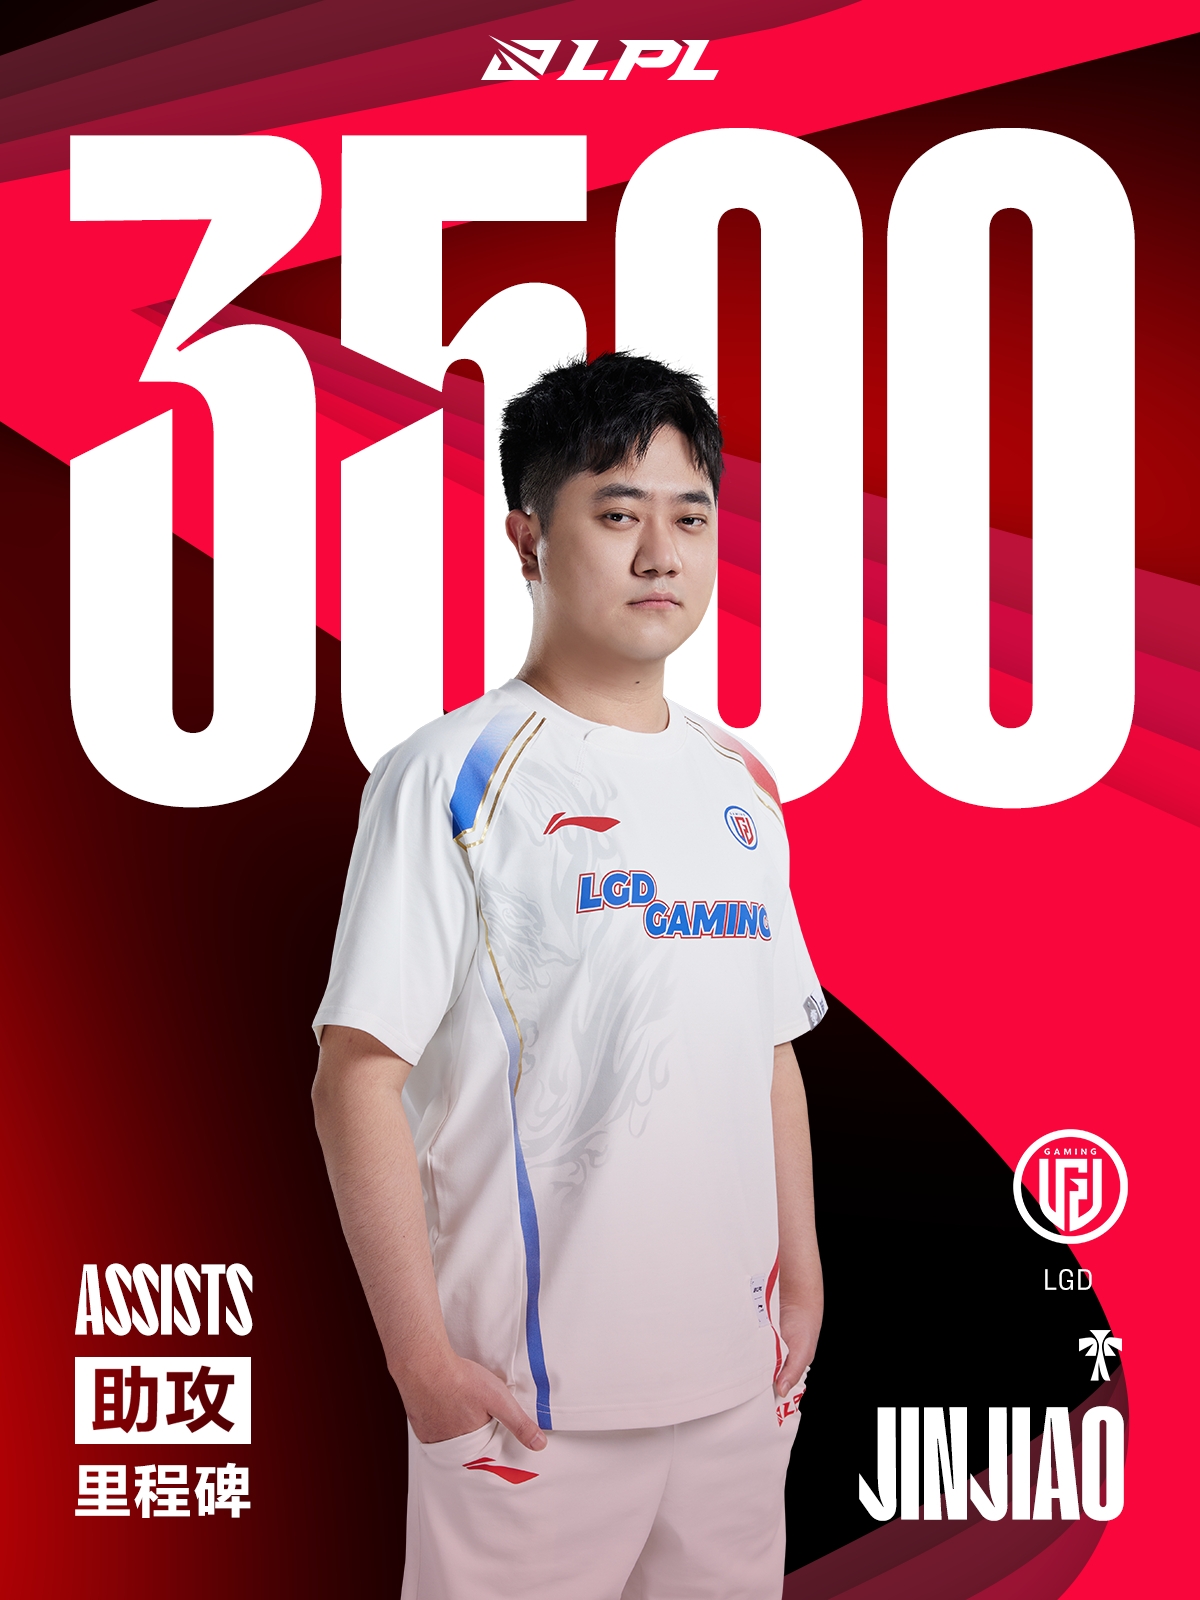 里程碑：Jinjiao达成LPL3500助攻成就辅助位第10位达成该成就的选手